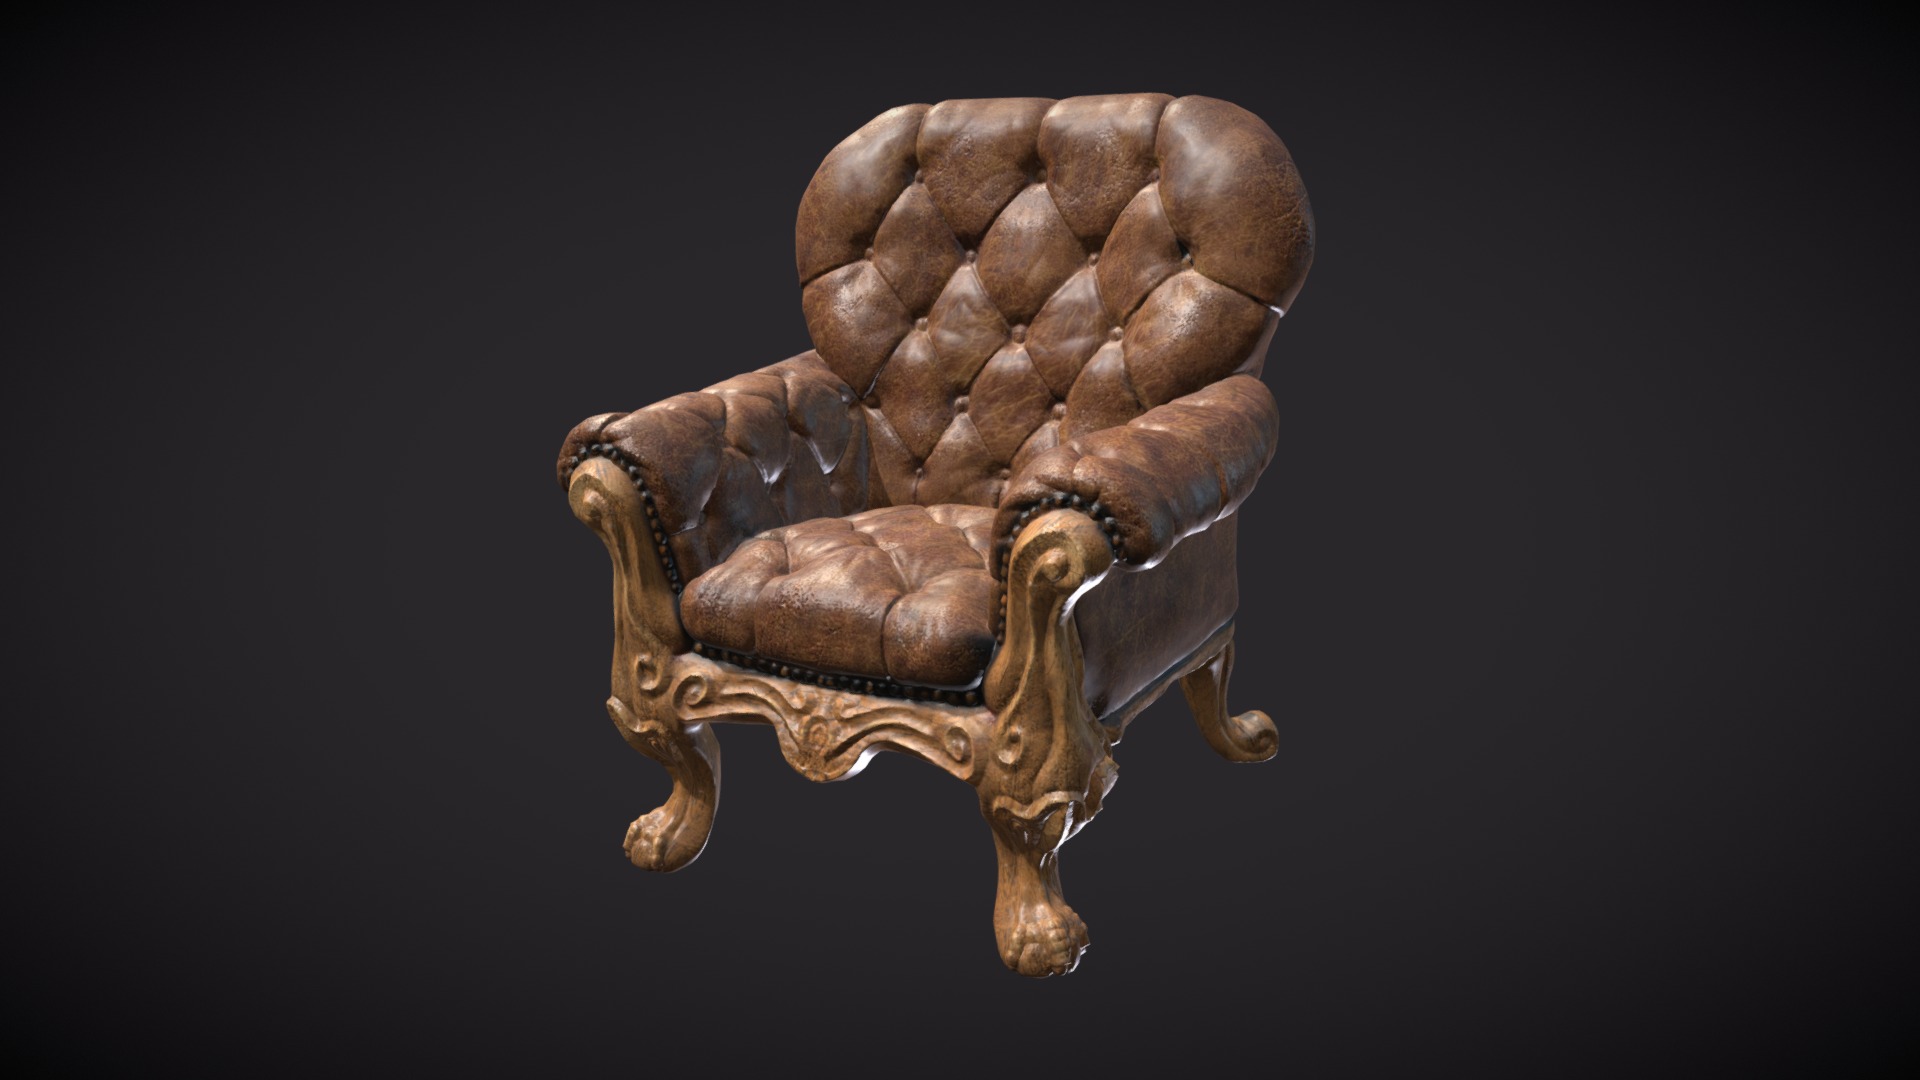 3D model Sculpt January 2018 – no23 – Furniture – Blender - This is a 3D model of the Sculpt January 2018 - no23 - Furniture - Blender. The 3D model is about a brown leather chair.